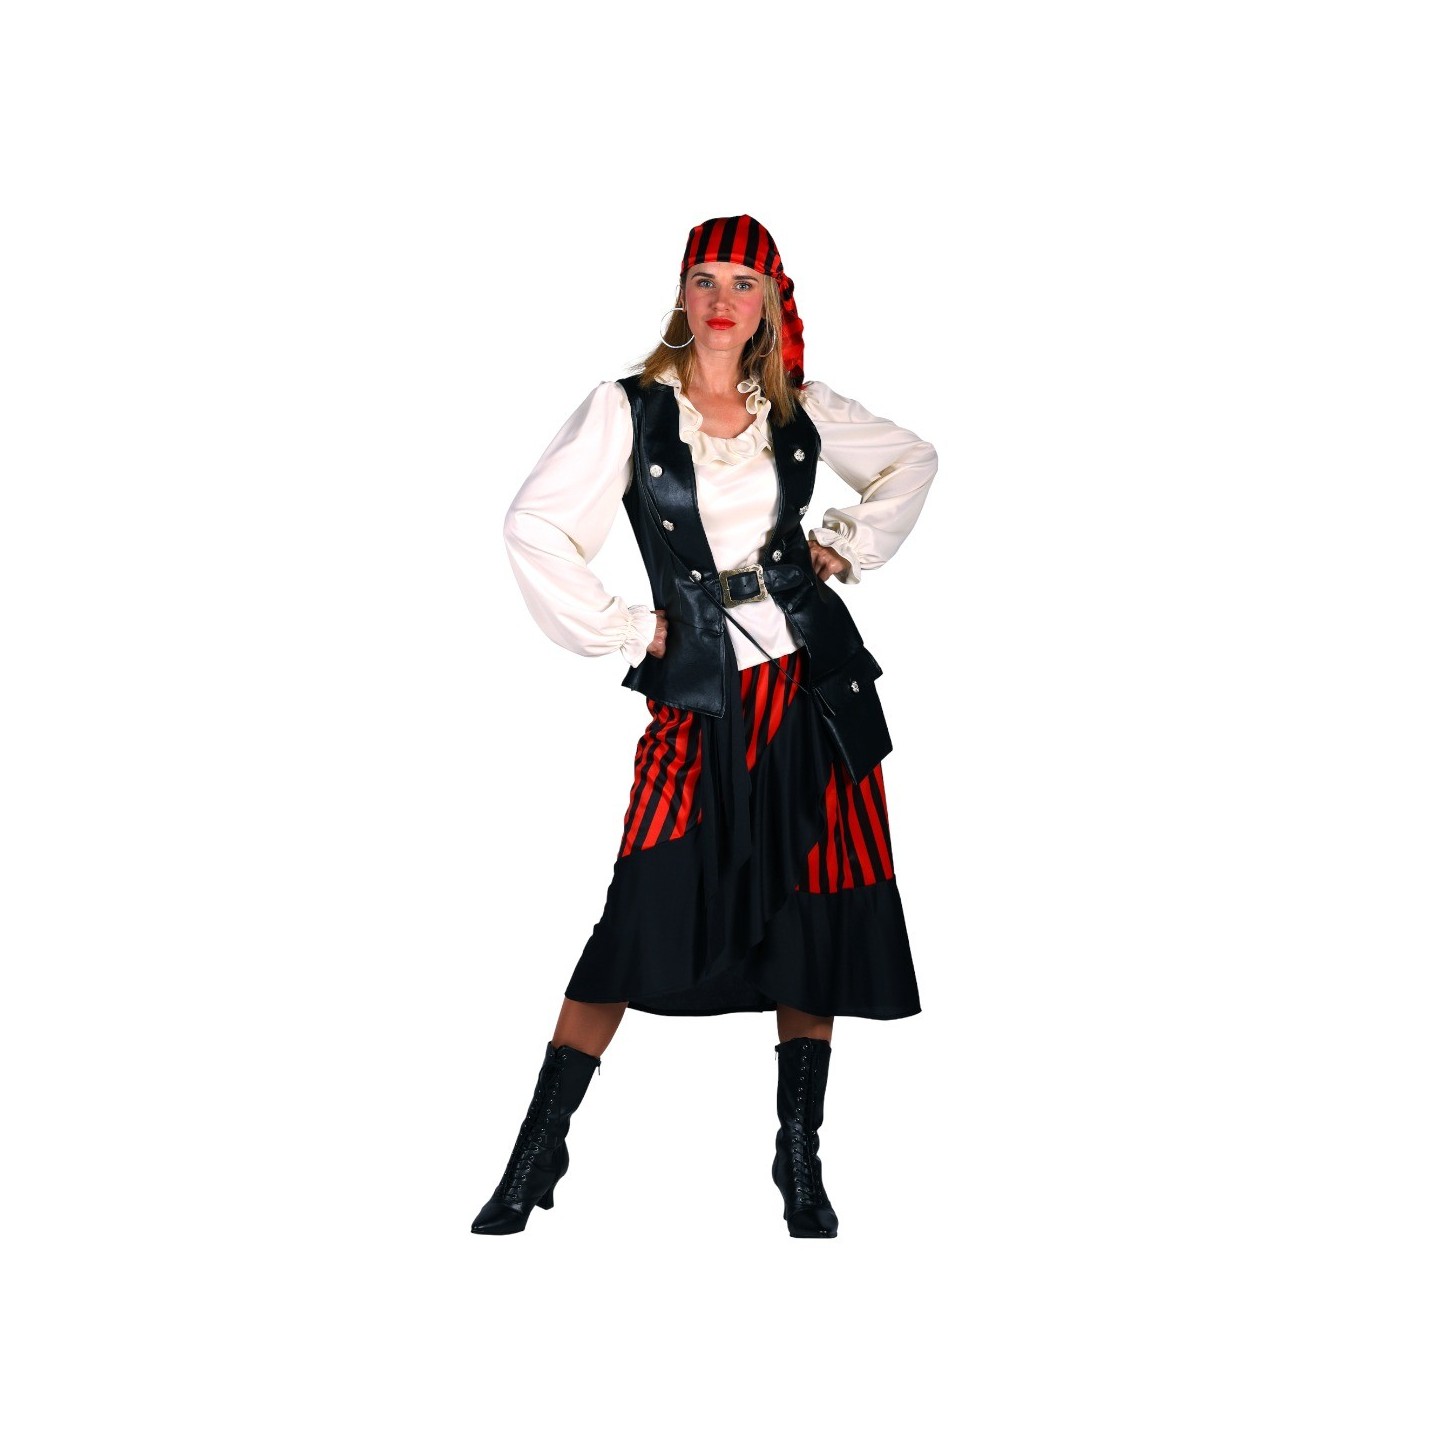 piraten kostuum dames volwassenen piraten jurk